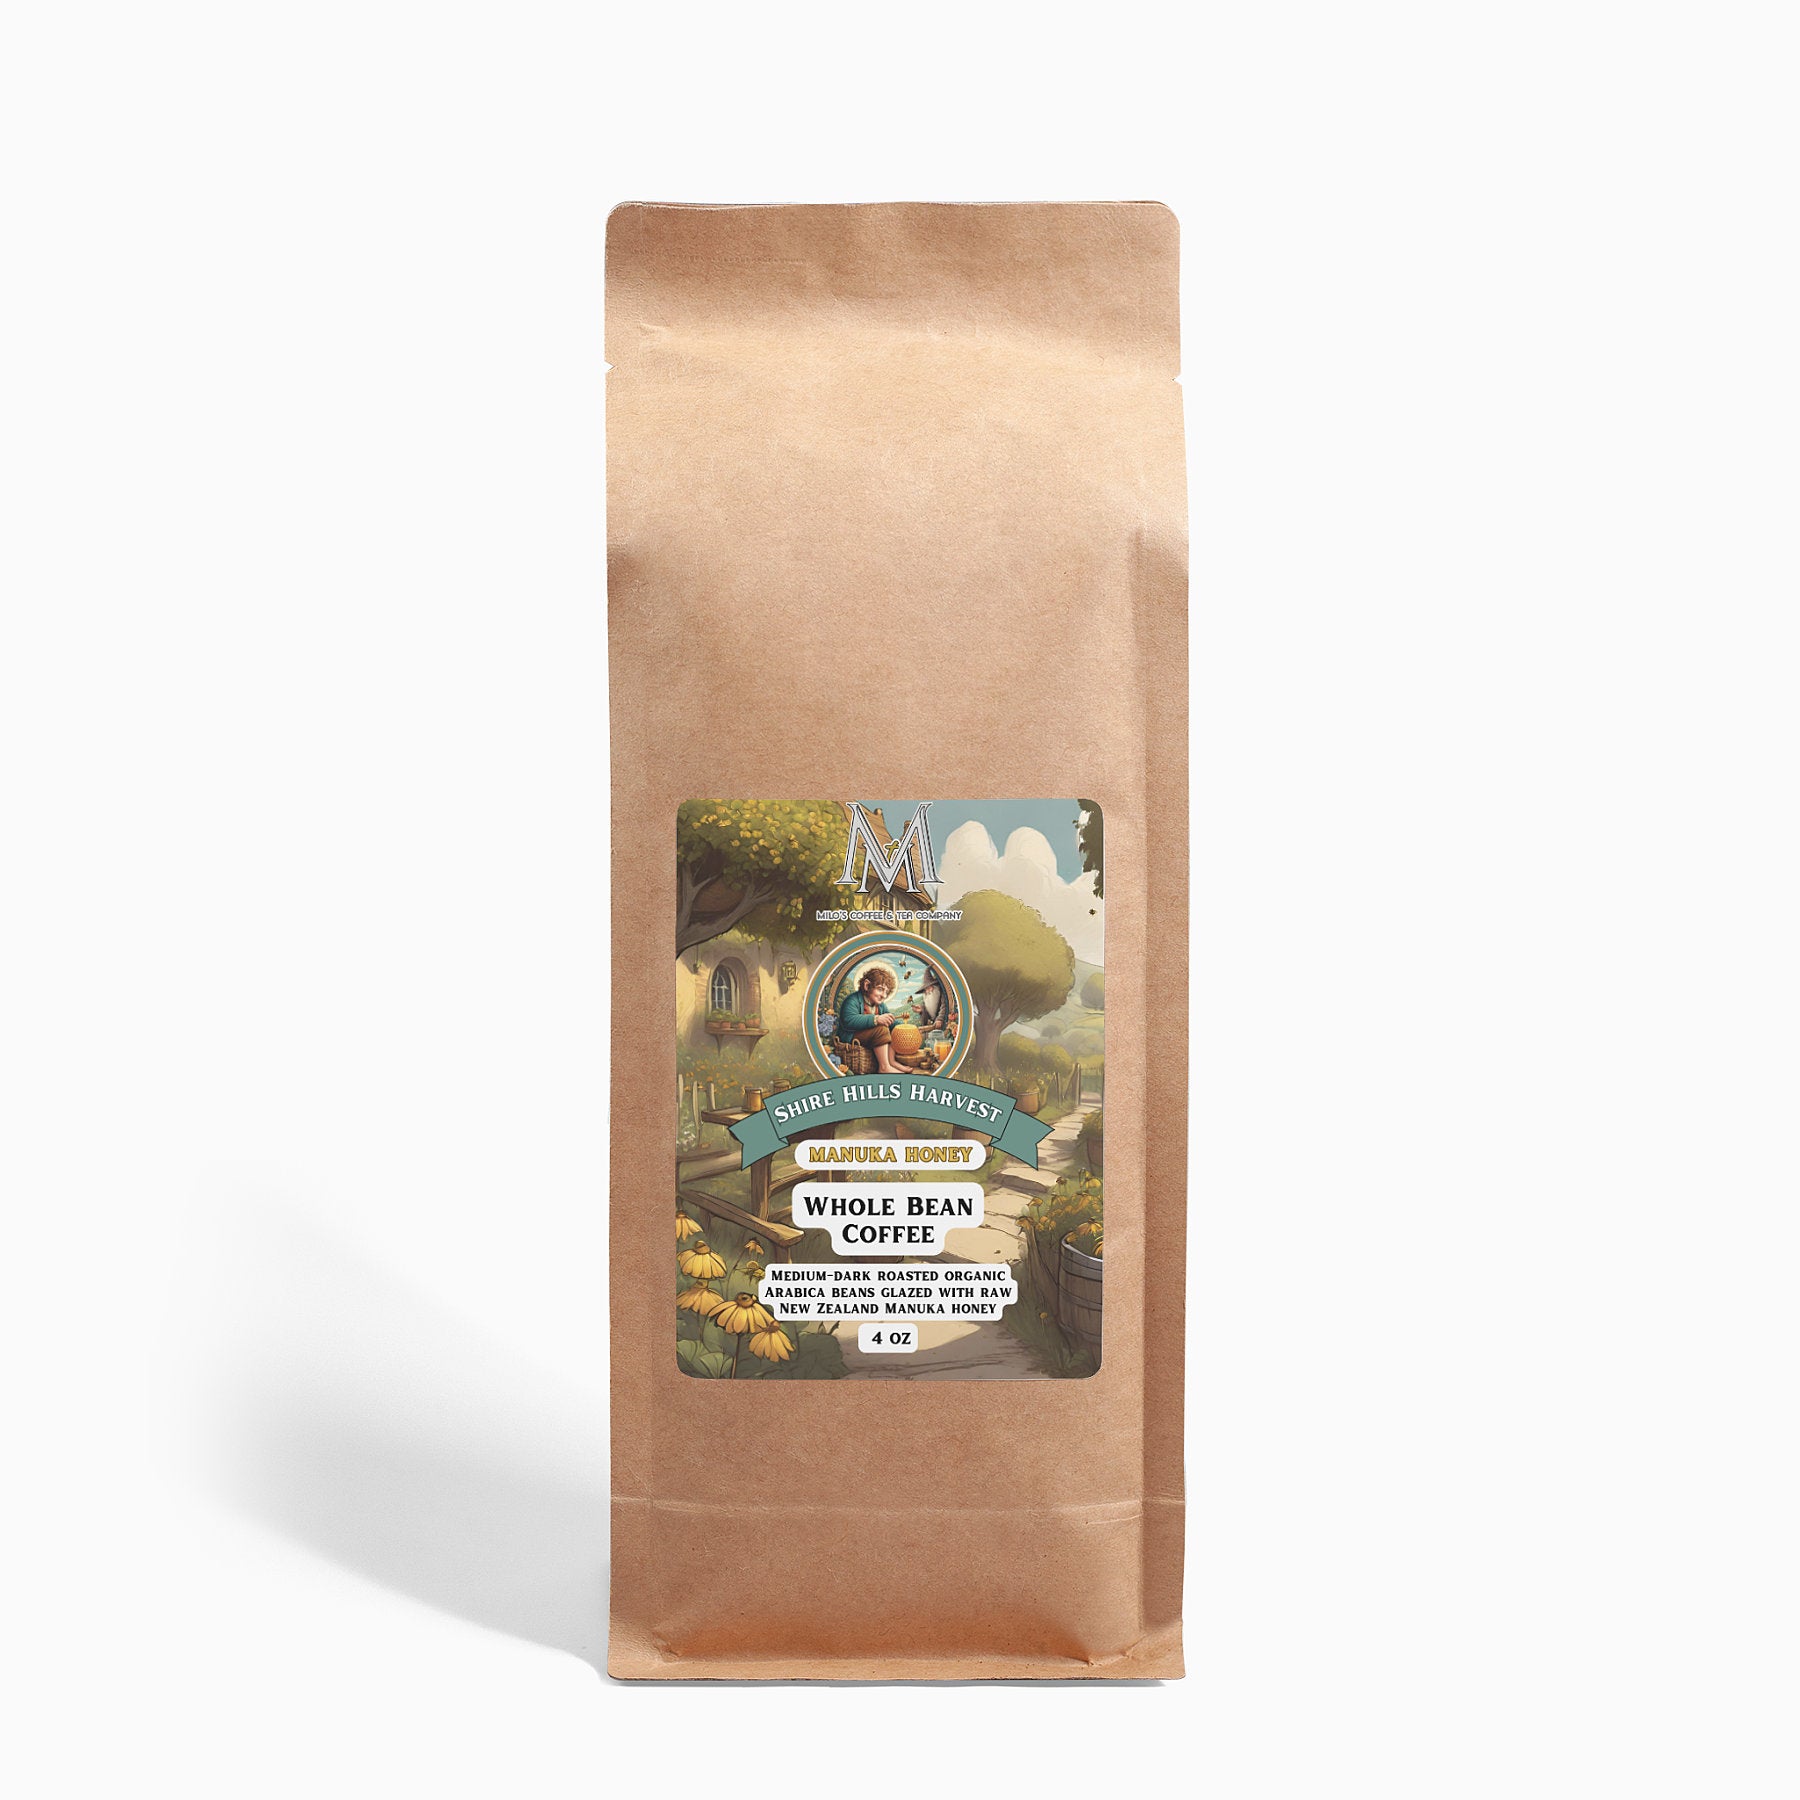 Shire Hills Harvest Manuka Honey Coffee 16oz - Milo's Coffee and Tea Company